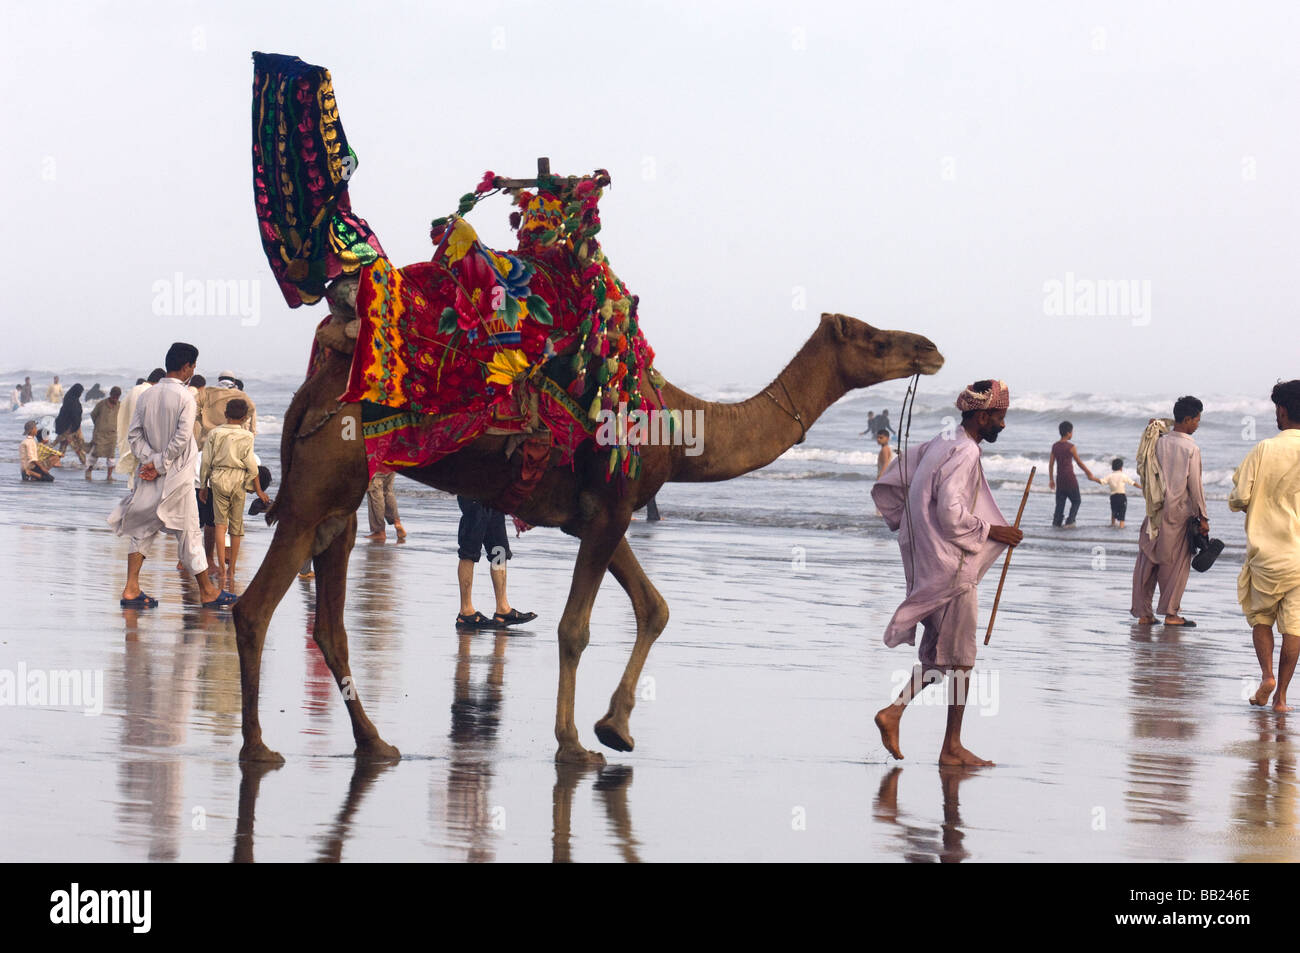 S pakistaníes disfrutando de los camellos y el mar en la playa de Clifton, Karachi, Pakistán Foto de stock